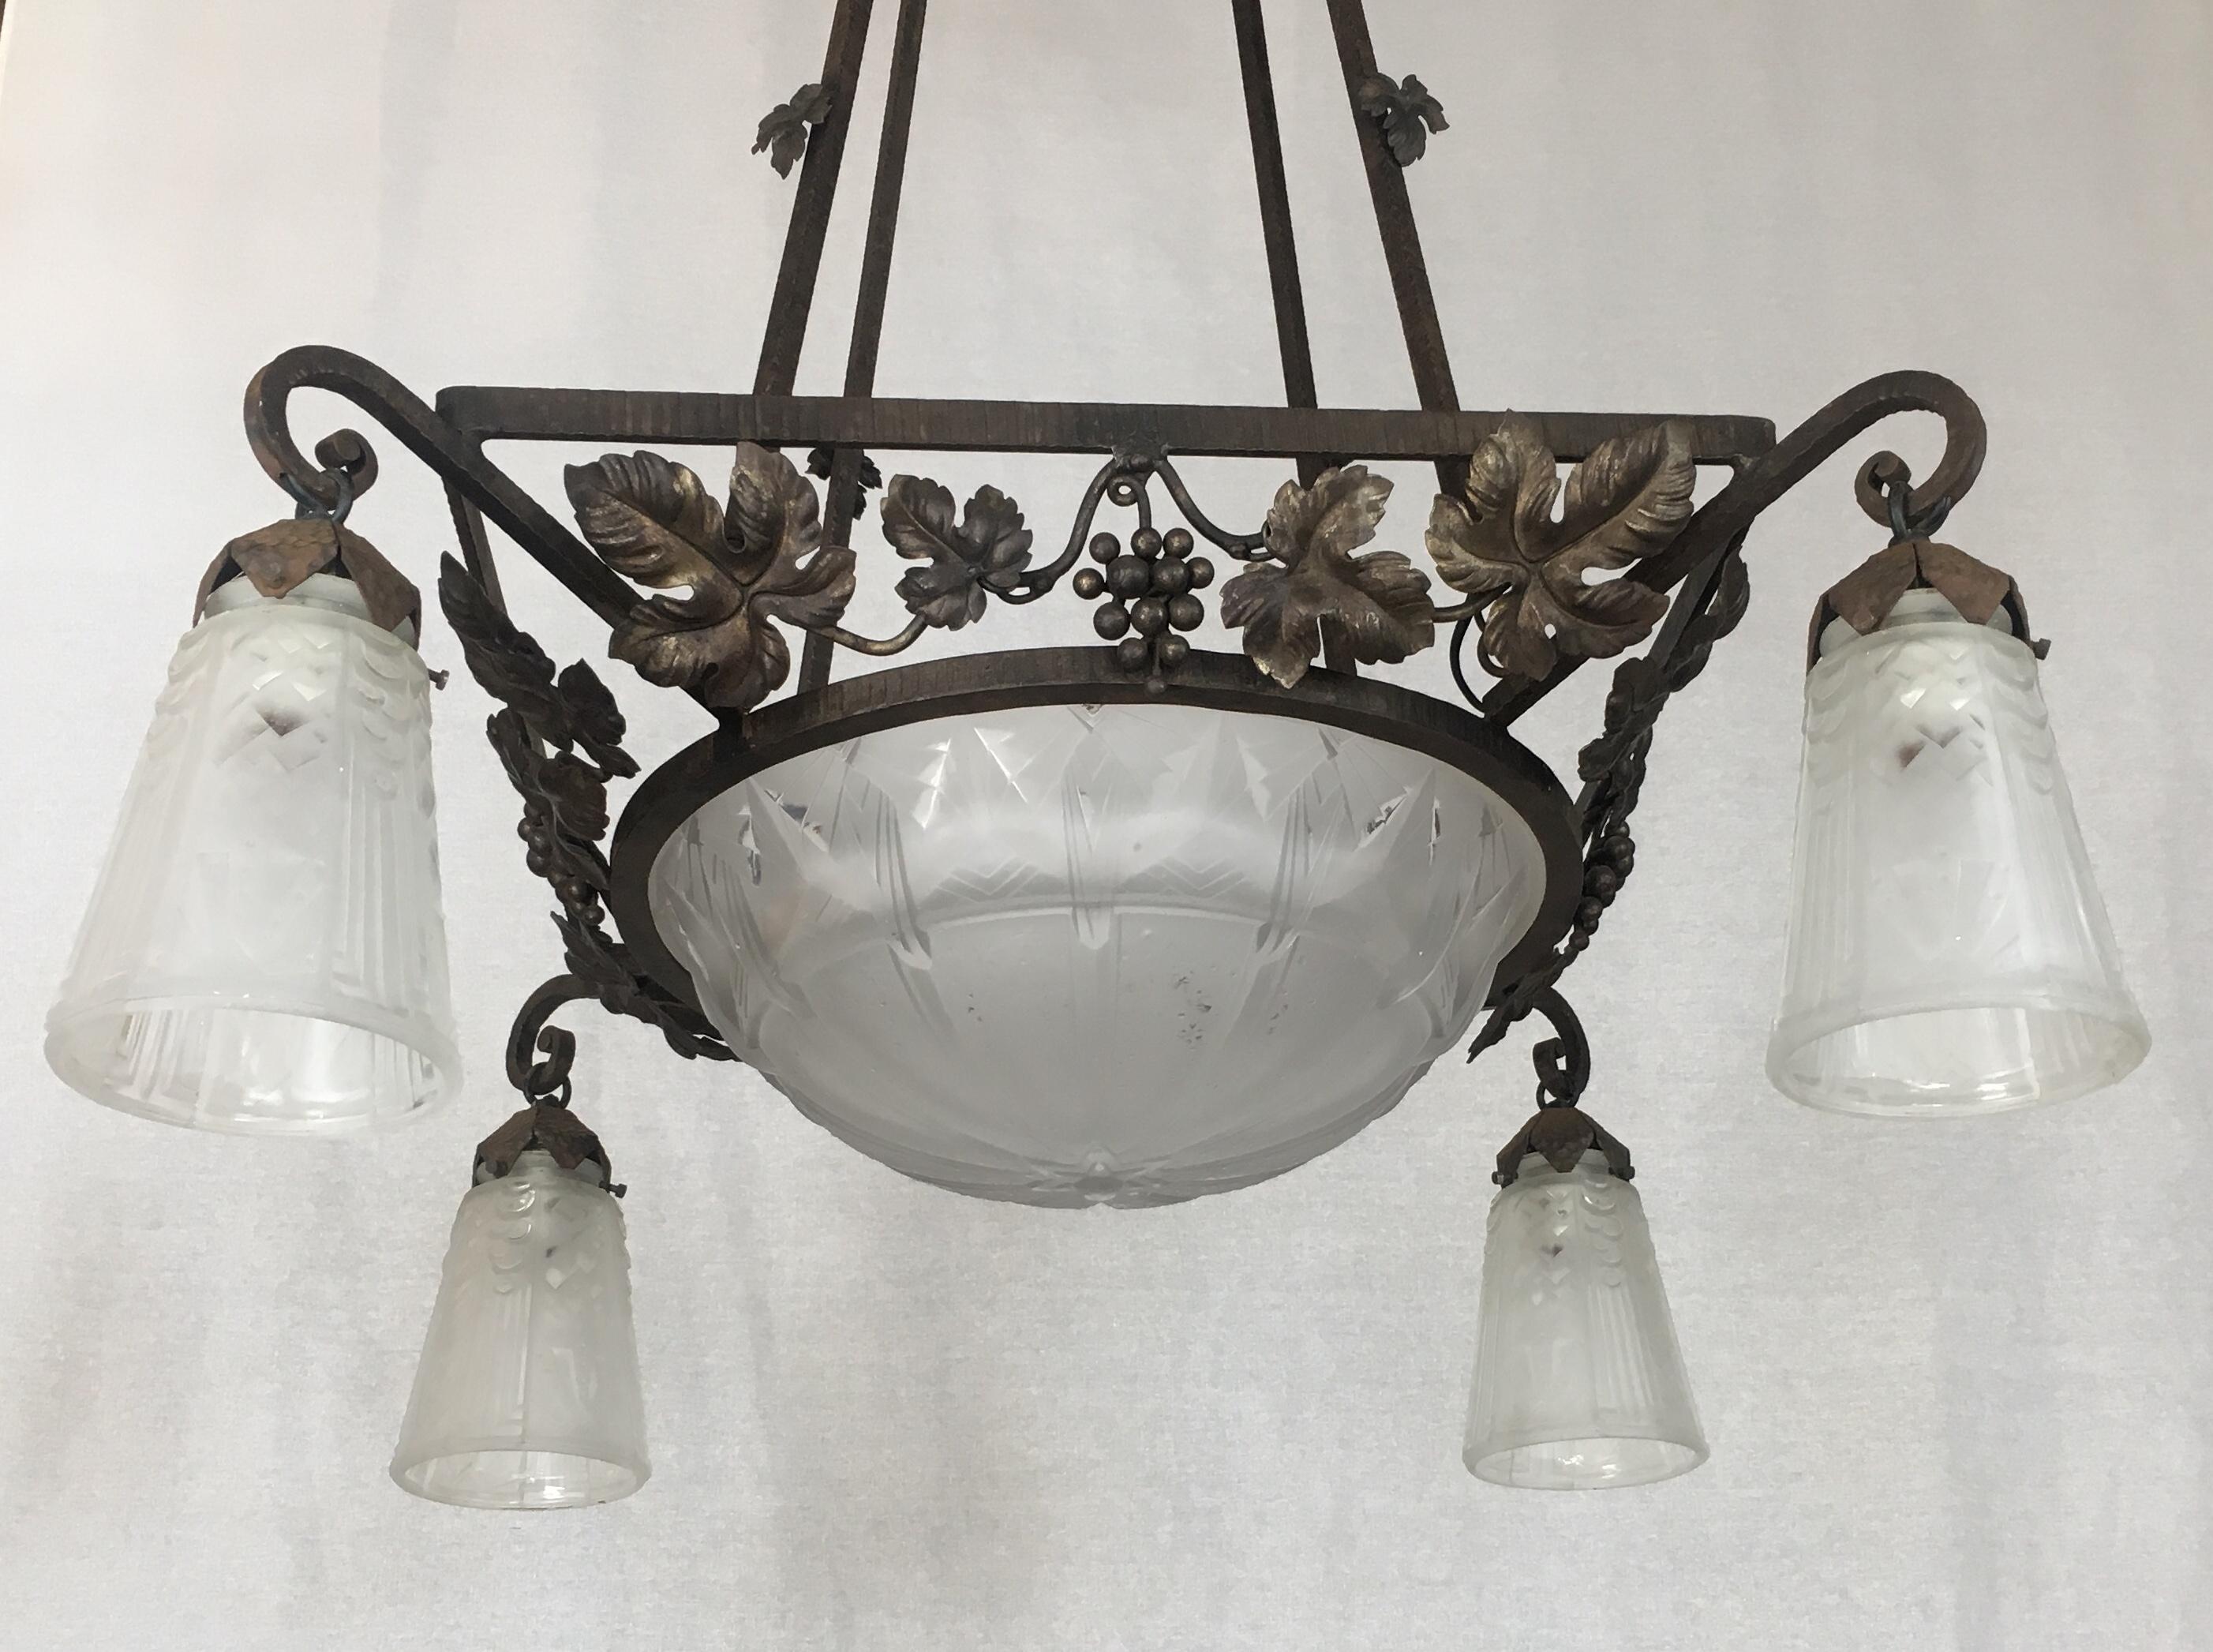 Un superbe luminaire Art déco classique de Muller Frères. Ce lustre accrocheur en fer forgé est doté d'un dôme en verre dépoli et gravé et d'abat-jours en trompette aux formes géométriques. Fabriqué à la main au début du 20e siècle, vers 1930. Ce